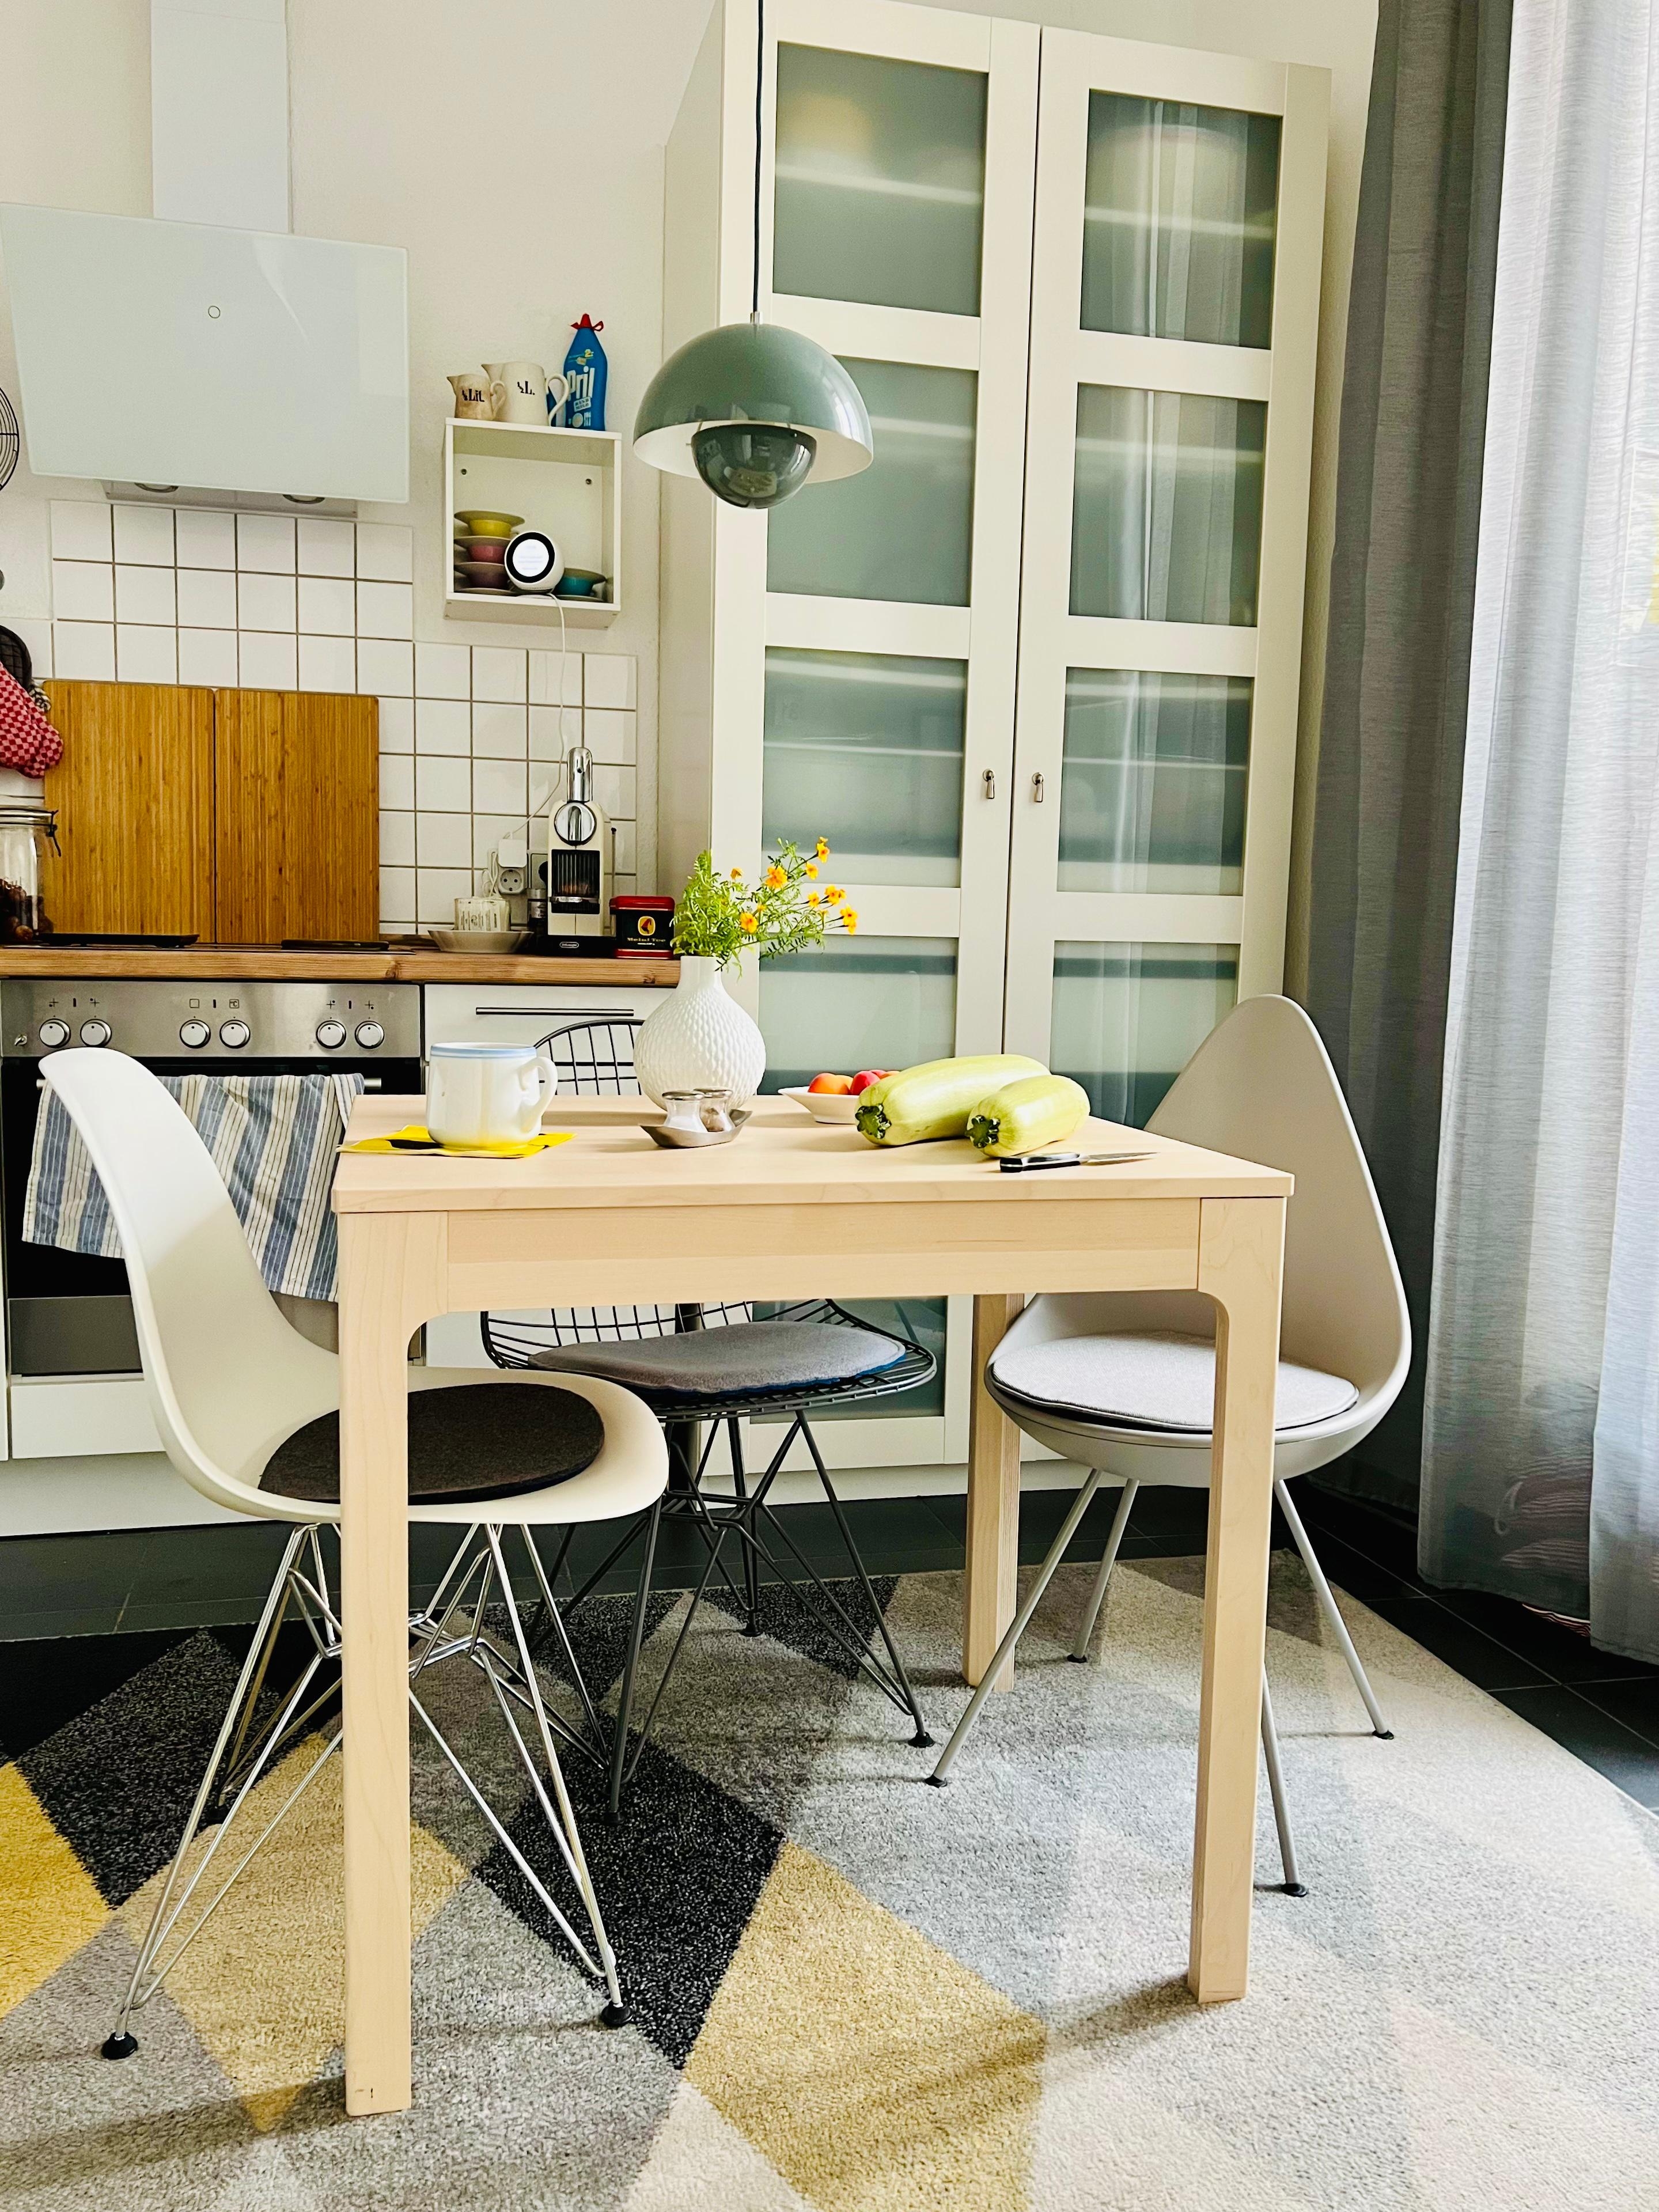 #küche#altbauwohnung#design#interieur#stühle